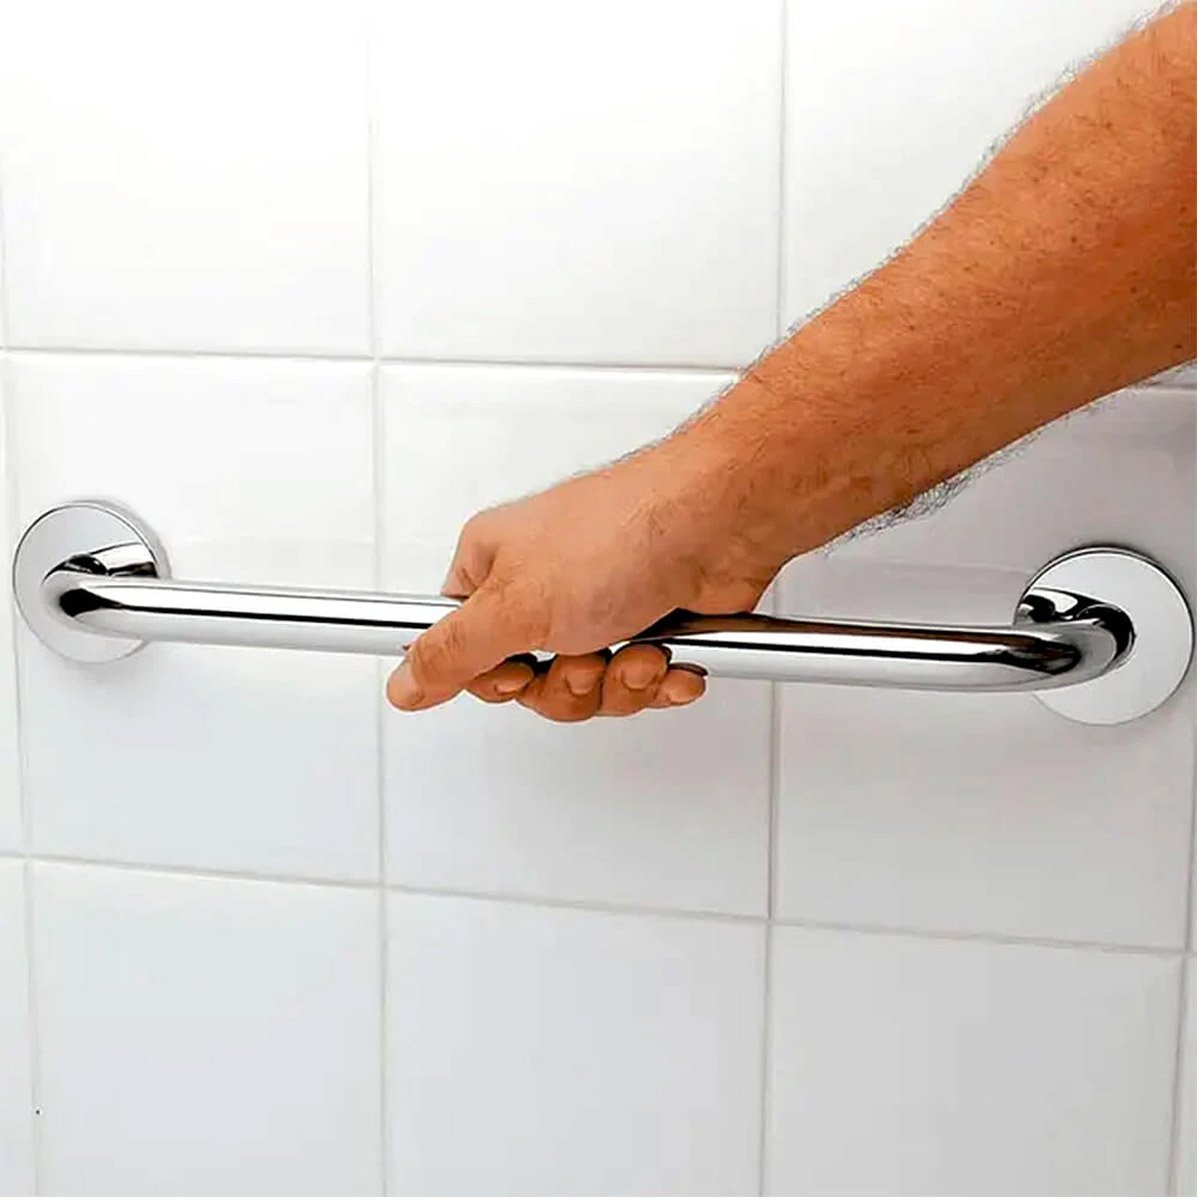 Alça de Apoio Inox 30cm Suporte Banheiro Box Acessibilidade Idoso Gestante Segurança Parede Apoio Re - 3